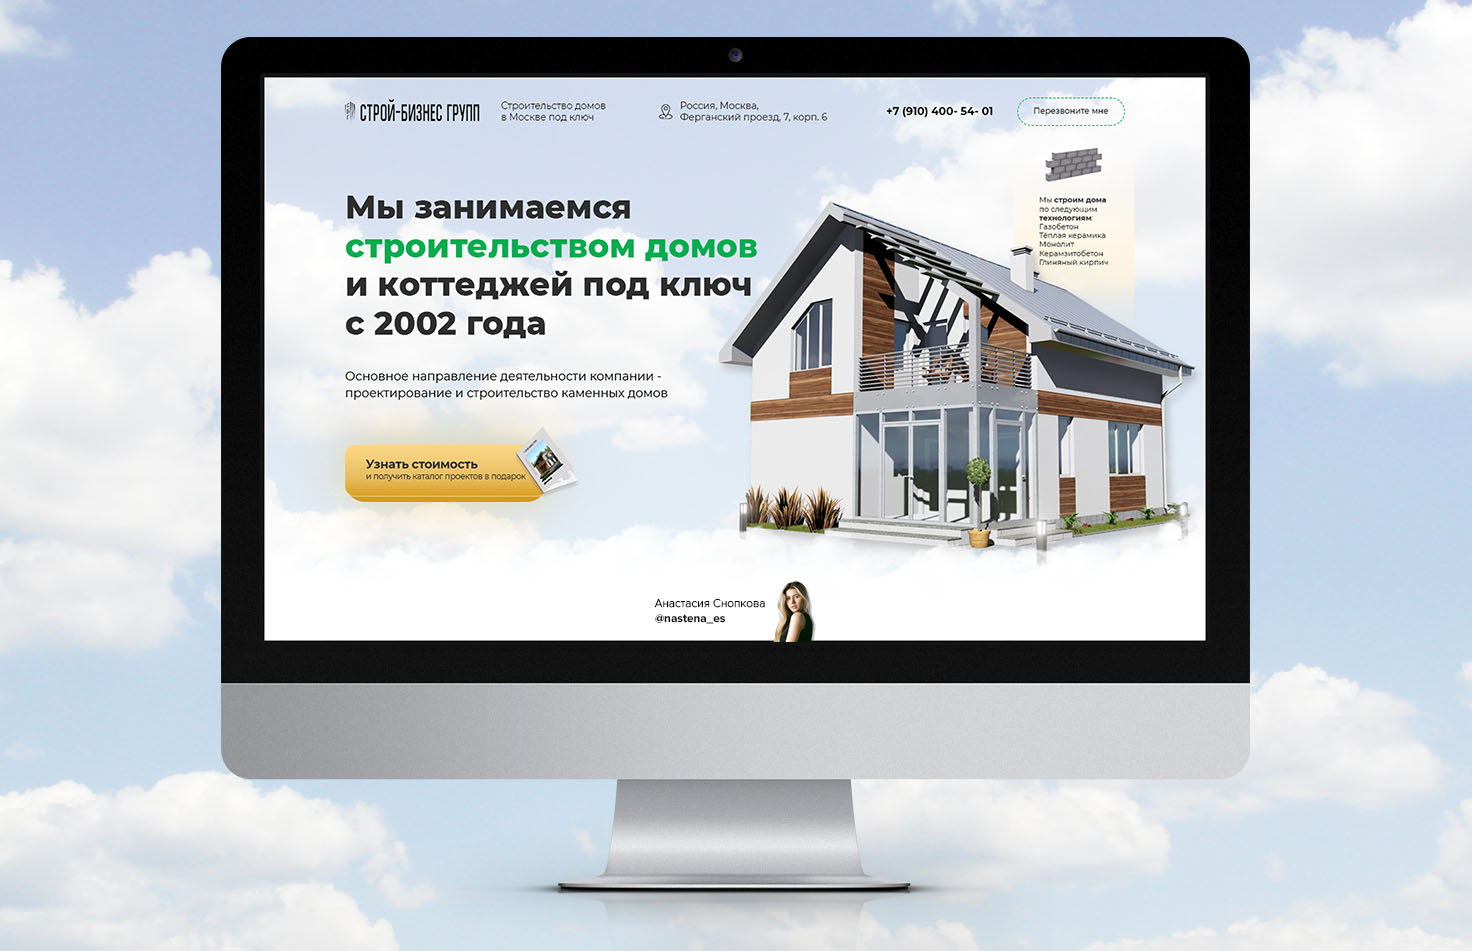 Разработка сайта и создание дизайна в Москве и всей России - Инфодизайн